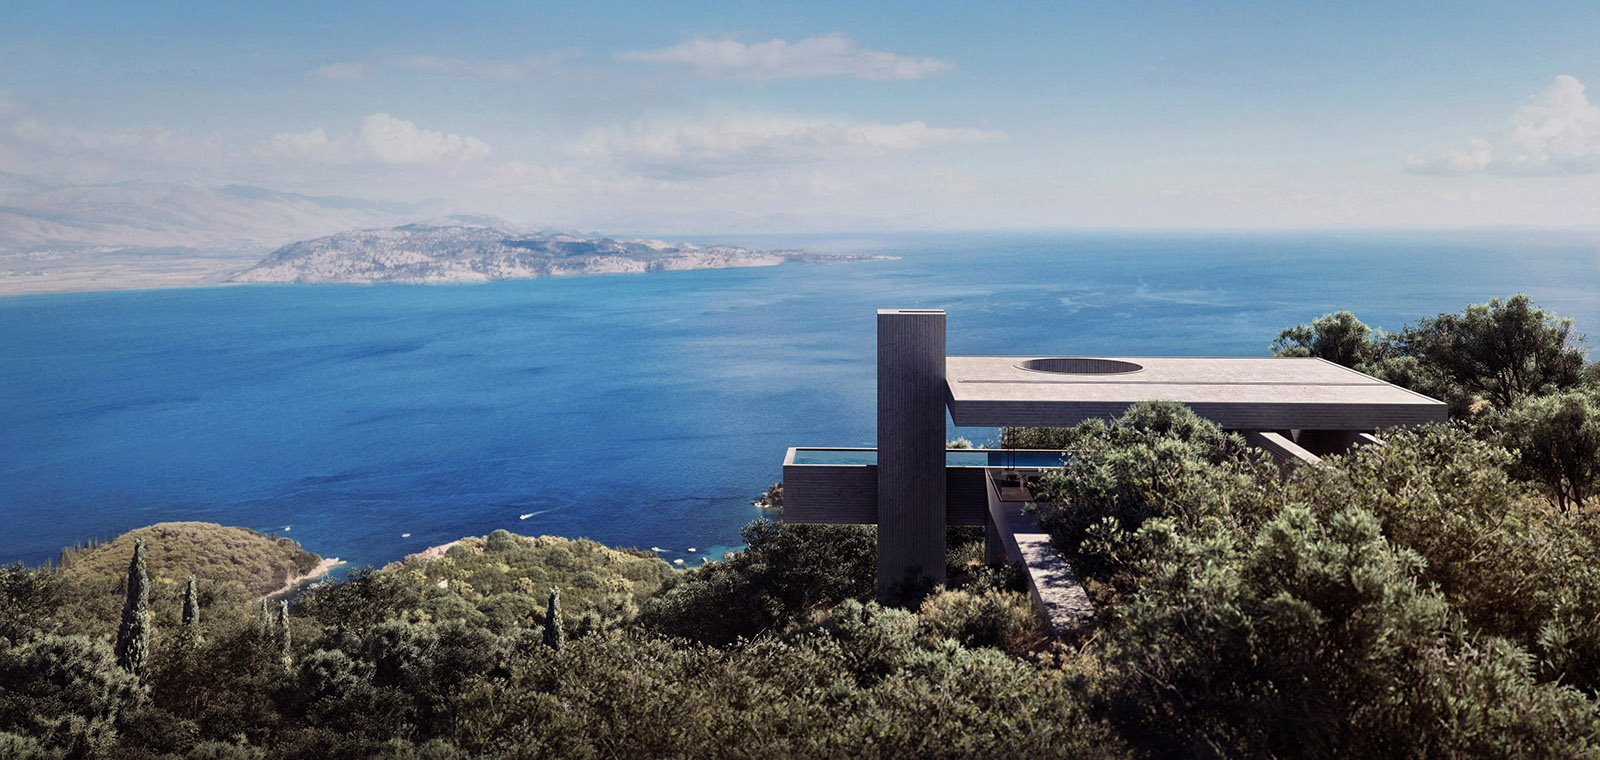 Casa Odyssa en la isla de corfú grecia.jpg 2